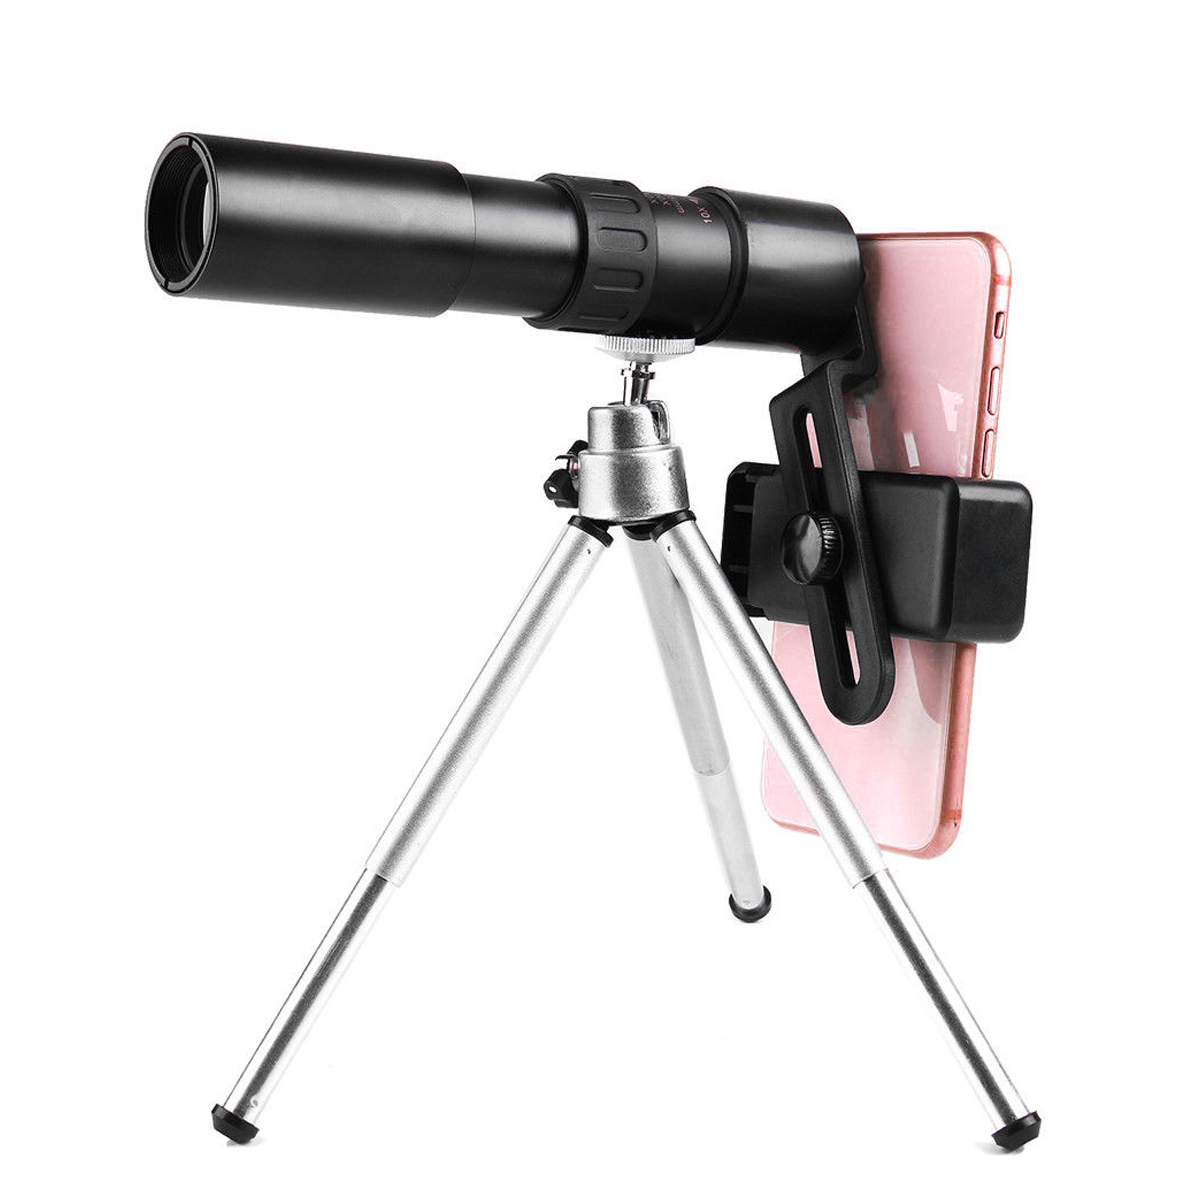 

Bakeey 10-30X Zoom Телескопический телескоп Монокуляр камера Объектив + Держатель для телефона + Штатив